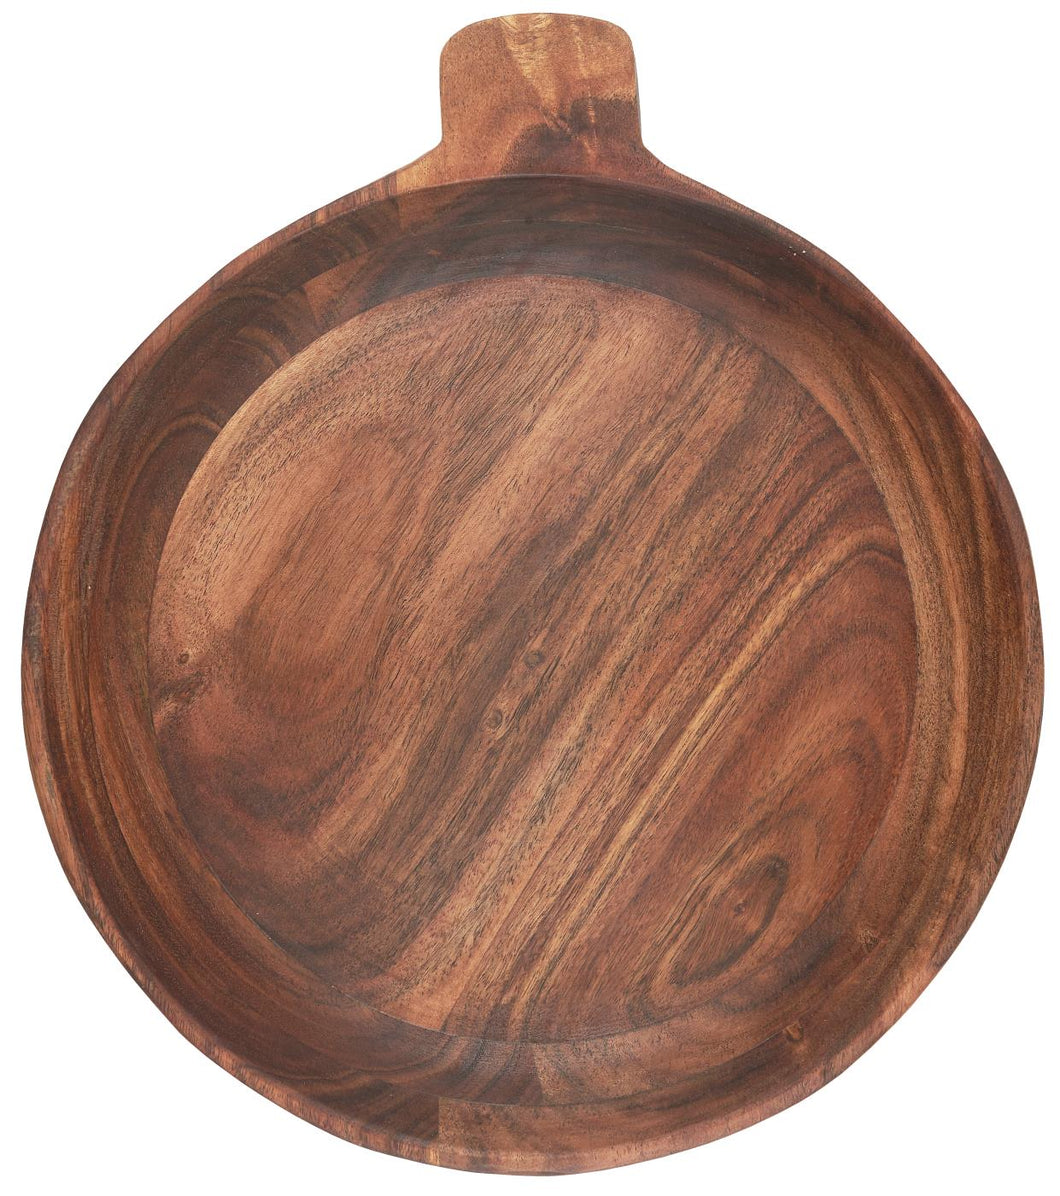 Oiled Acacia Wood Bowls